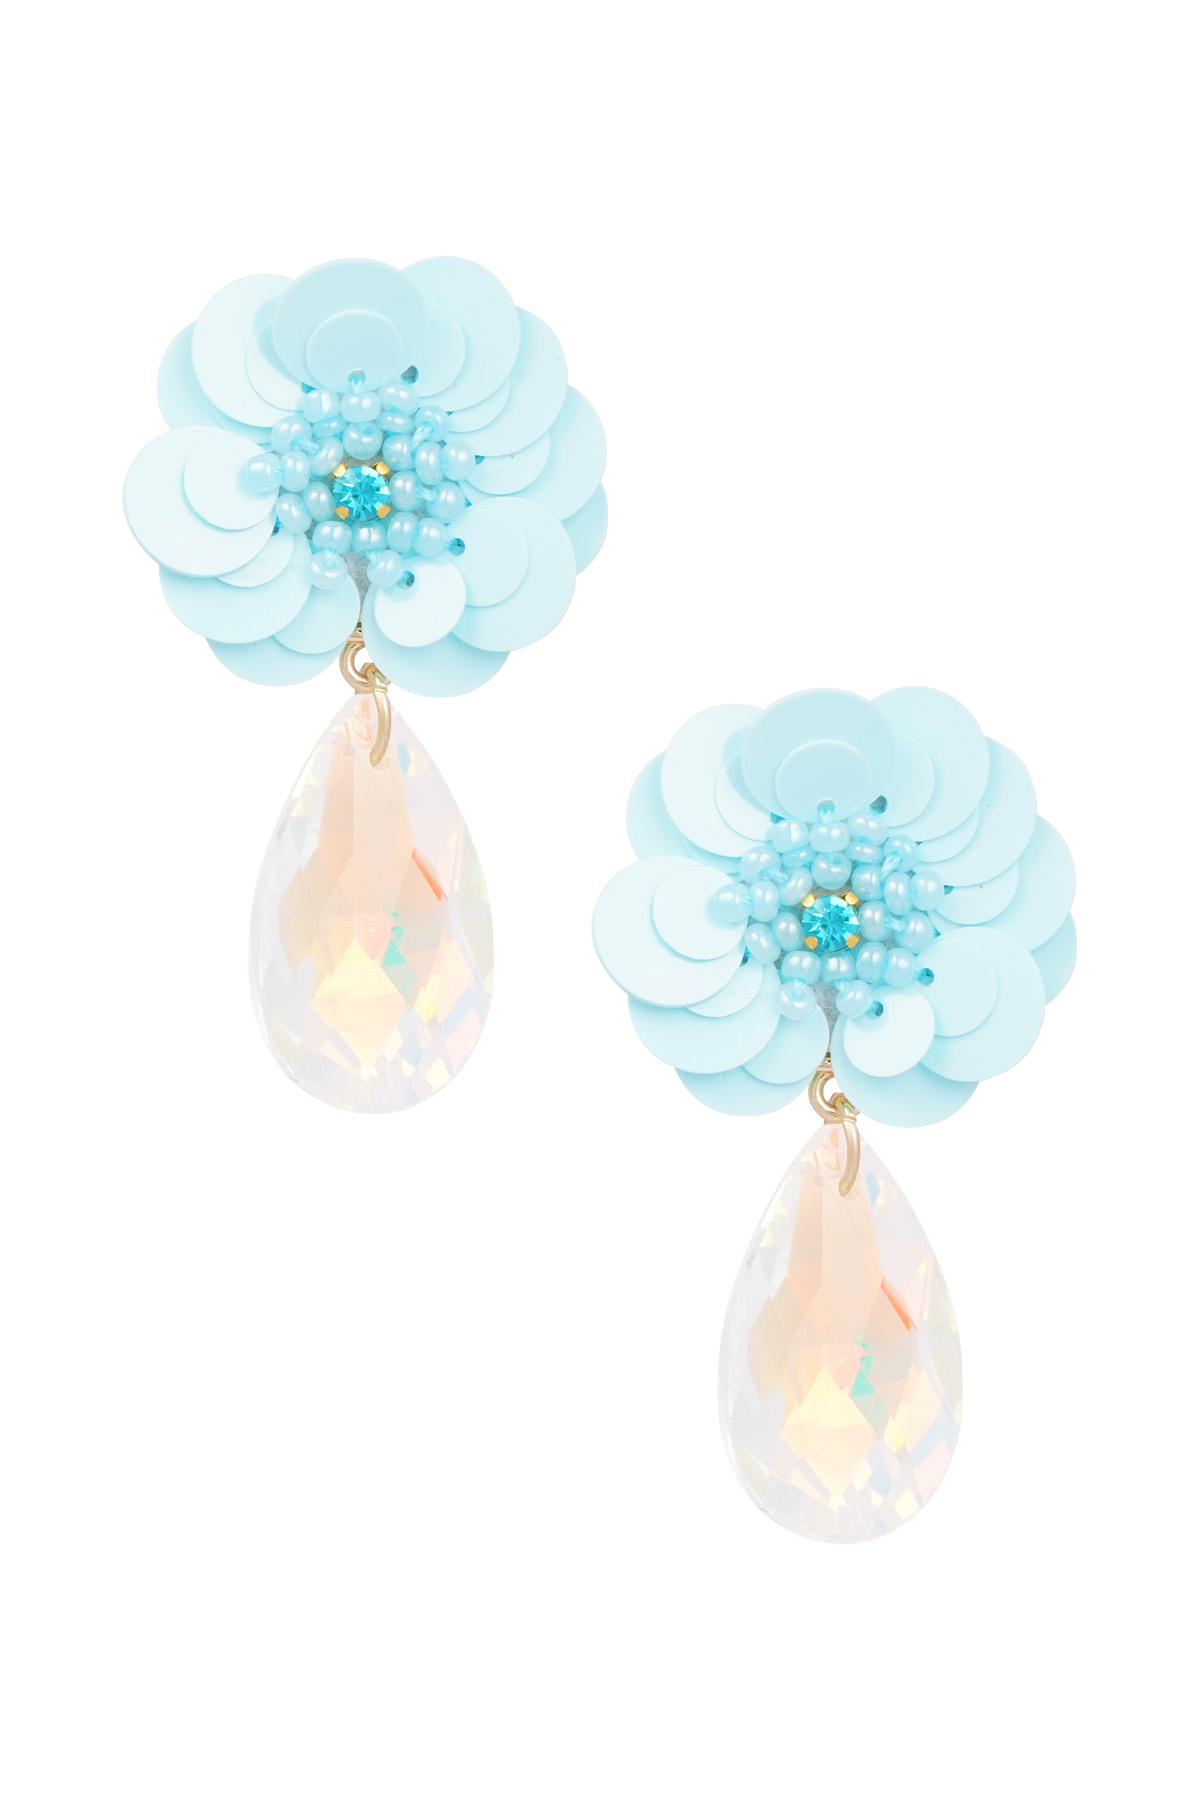 Flower earrings with drop Earrings